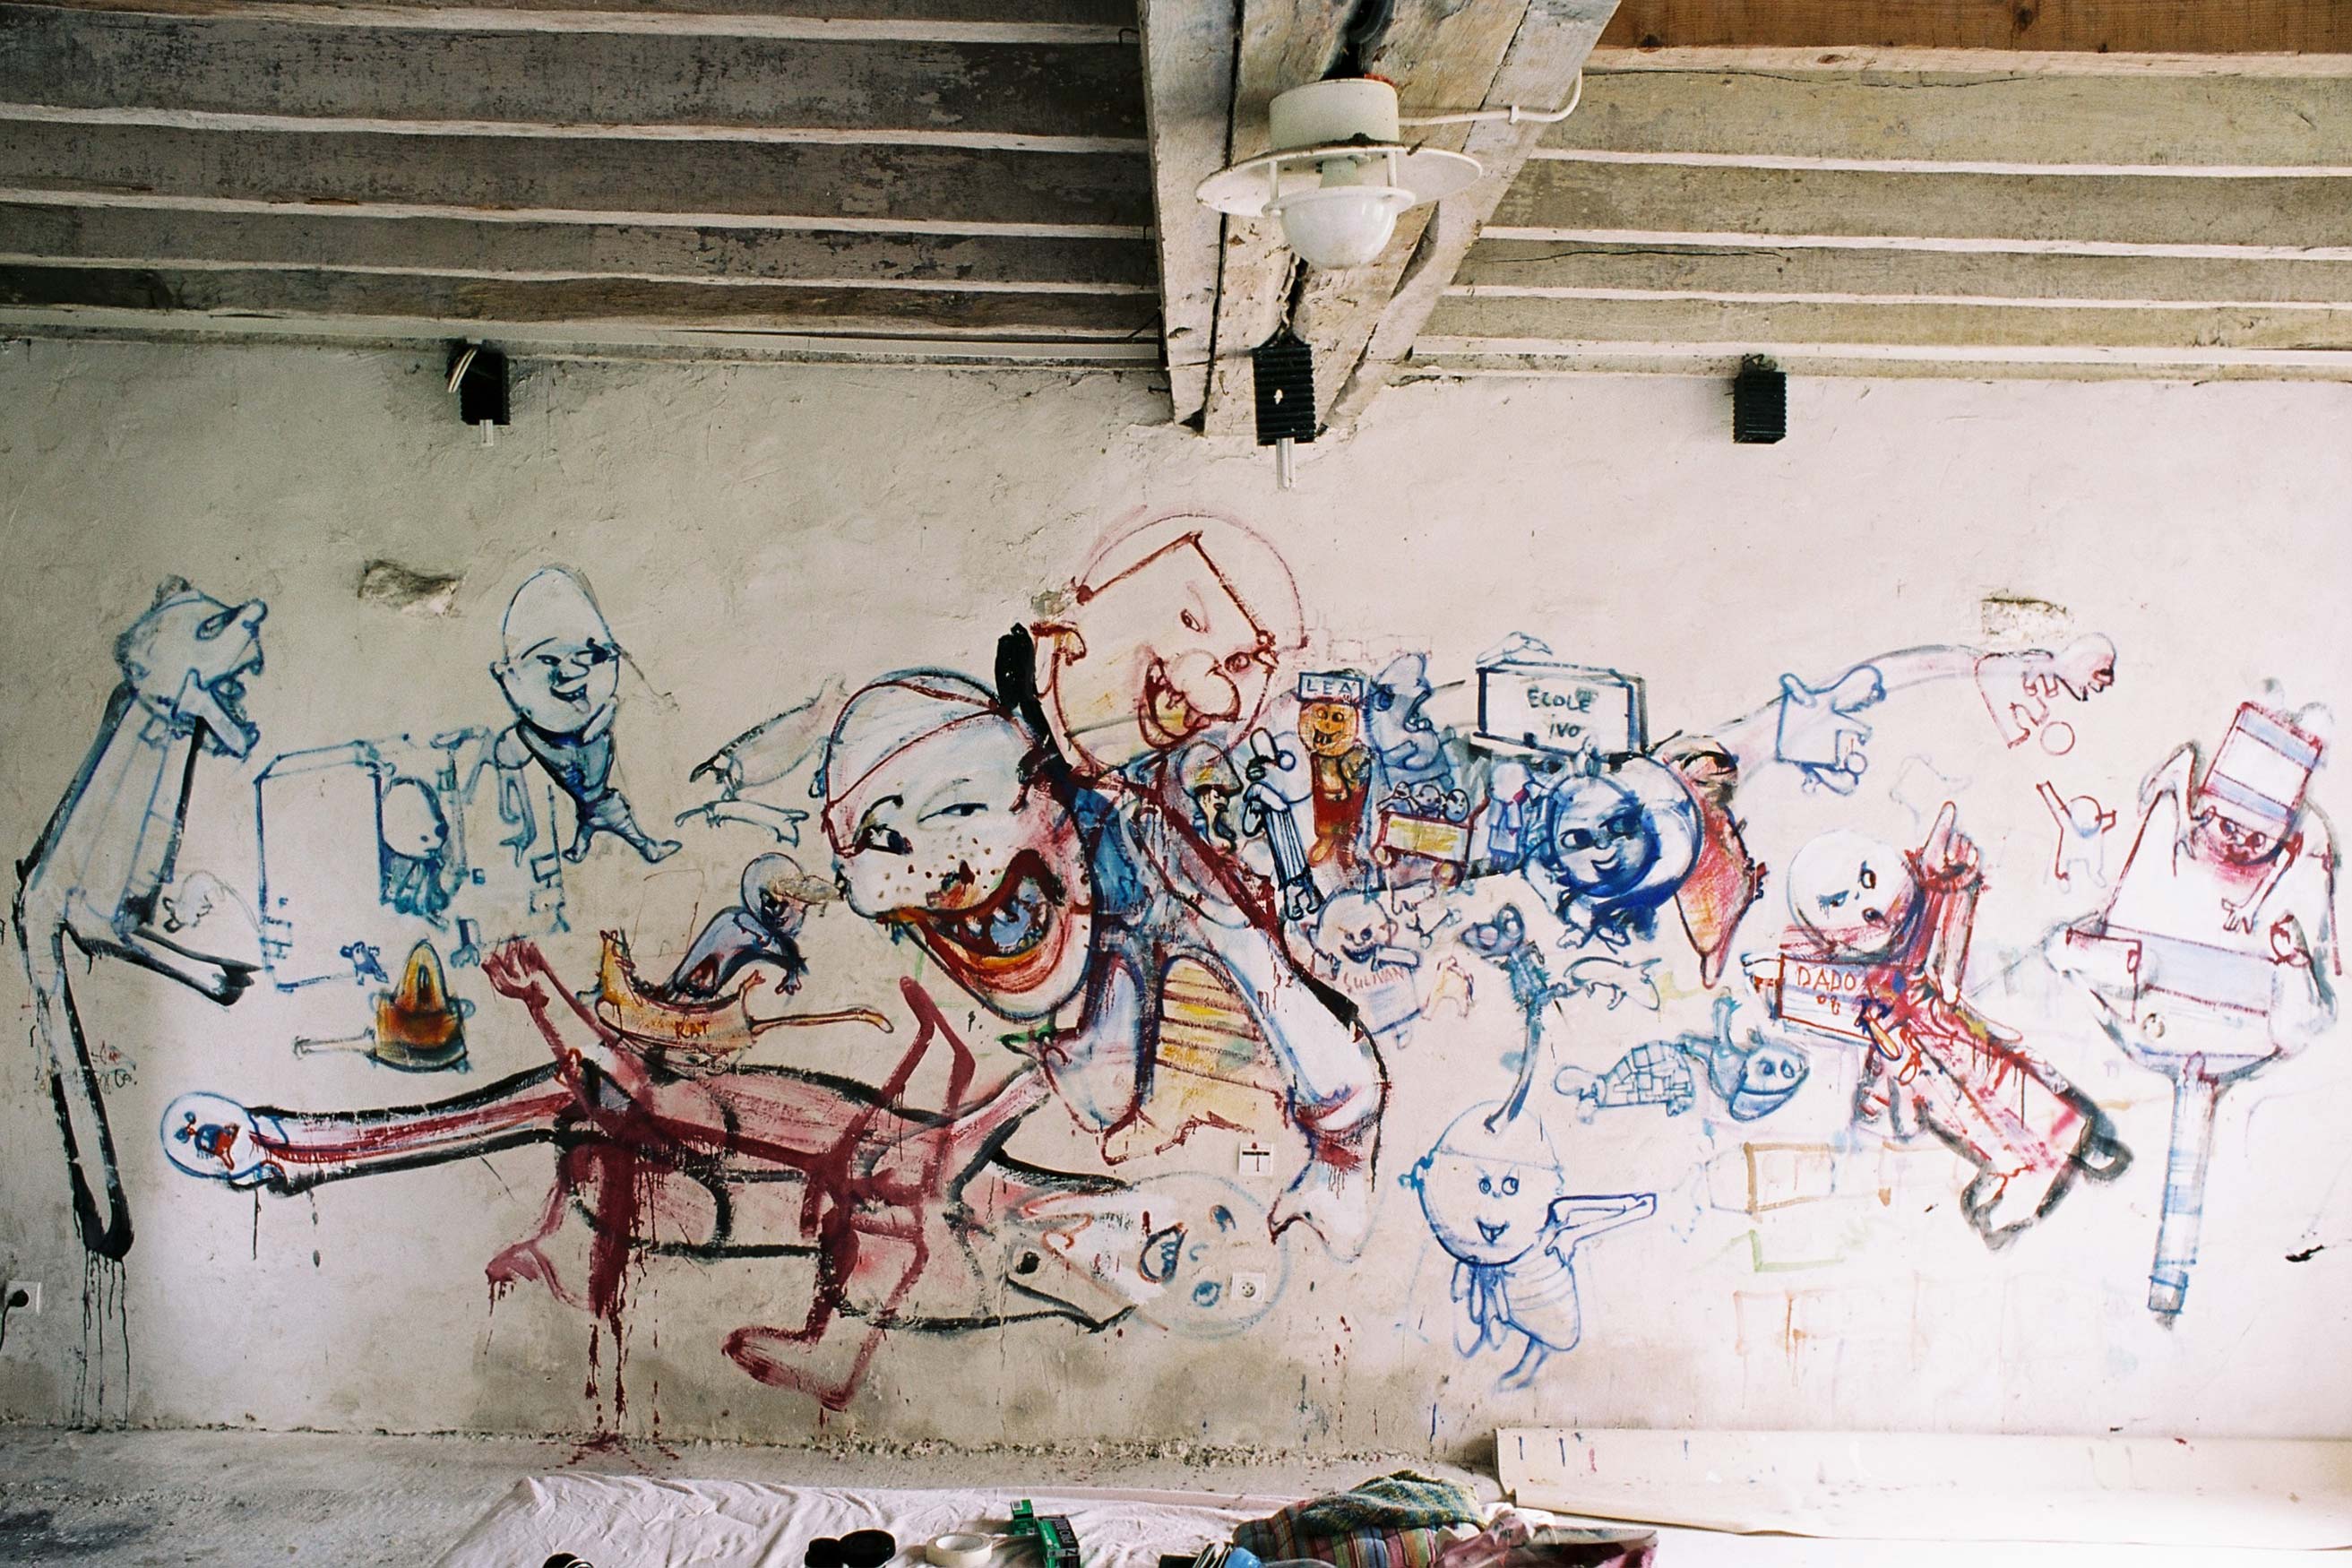 Third studio – Murals at Hérouval